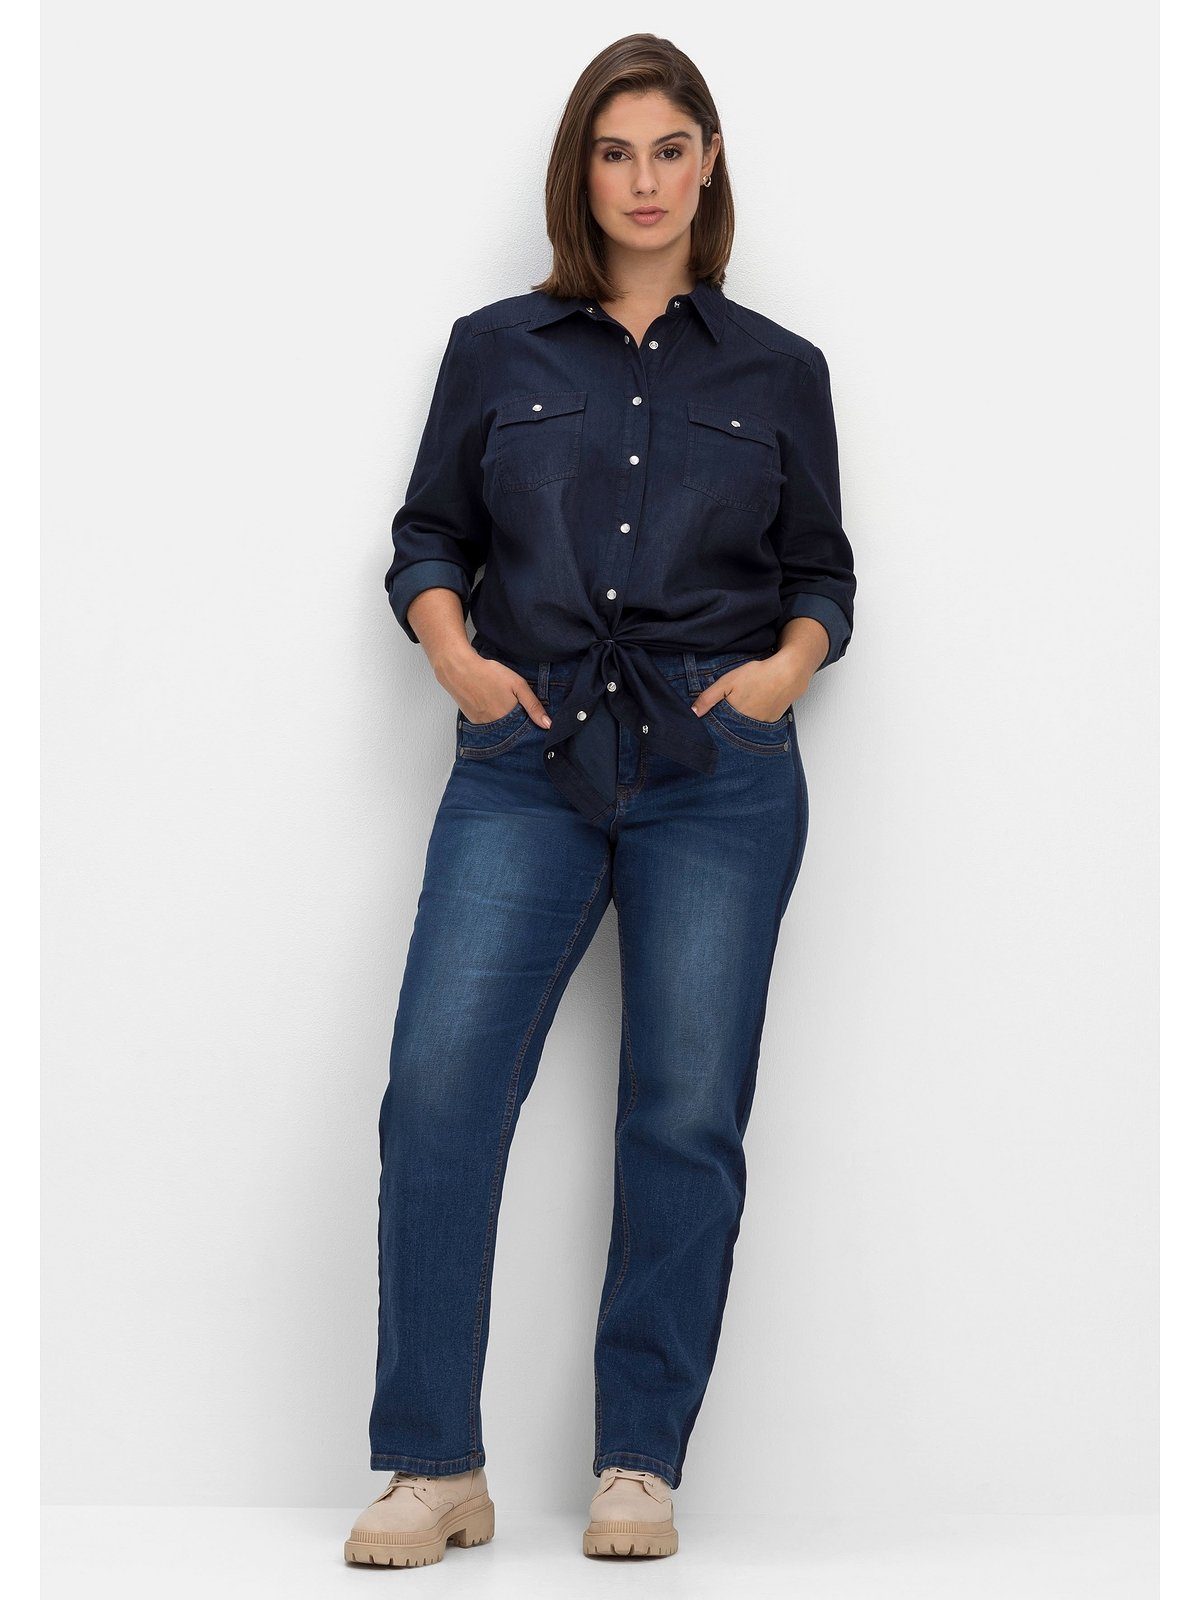 sehr Gerade Oberschenkel, Galonstreifen Größen in Beinform, kräftige Jeans dunkler Gerade Sheego PIA Große Waschung für